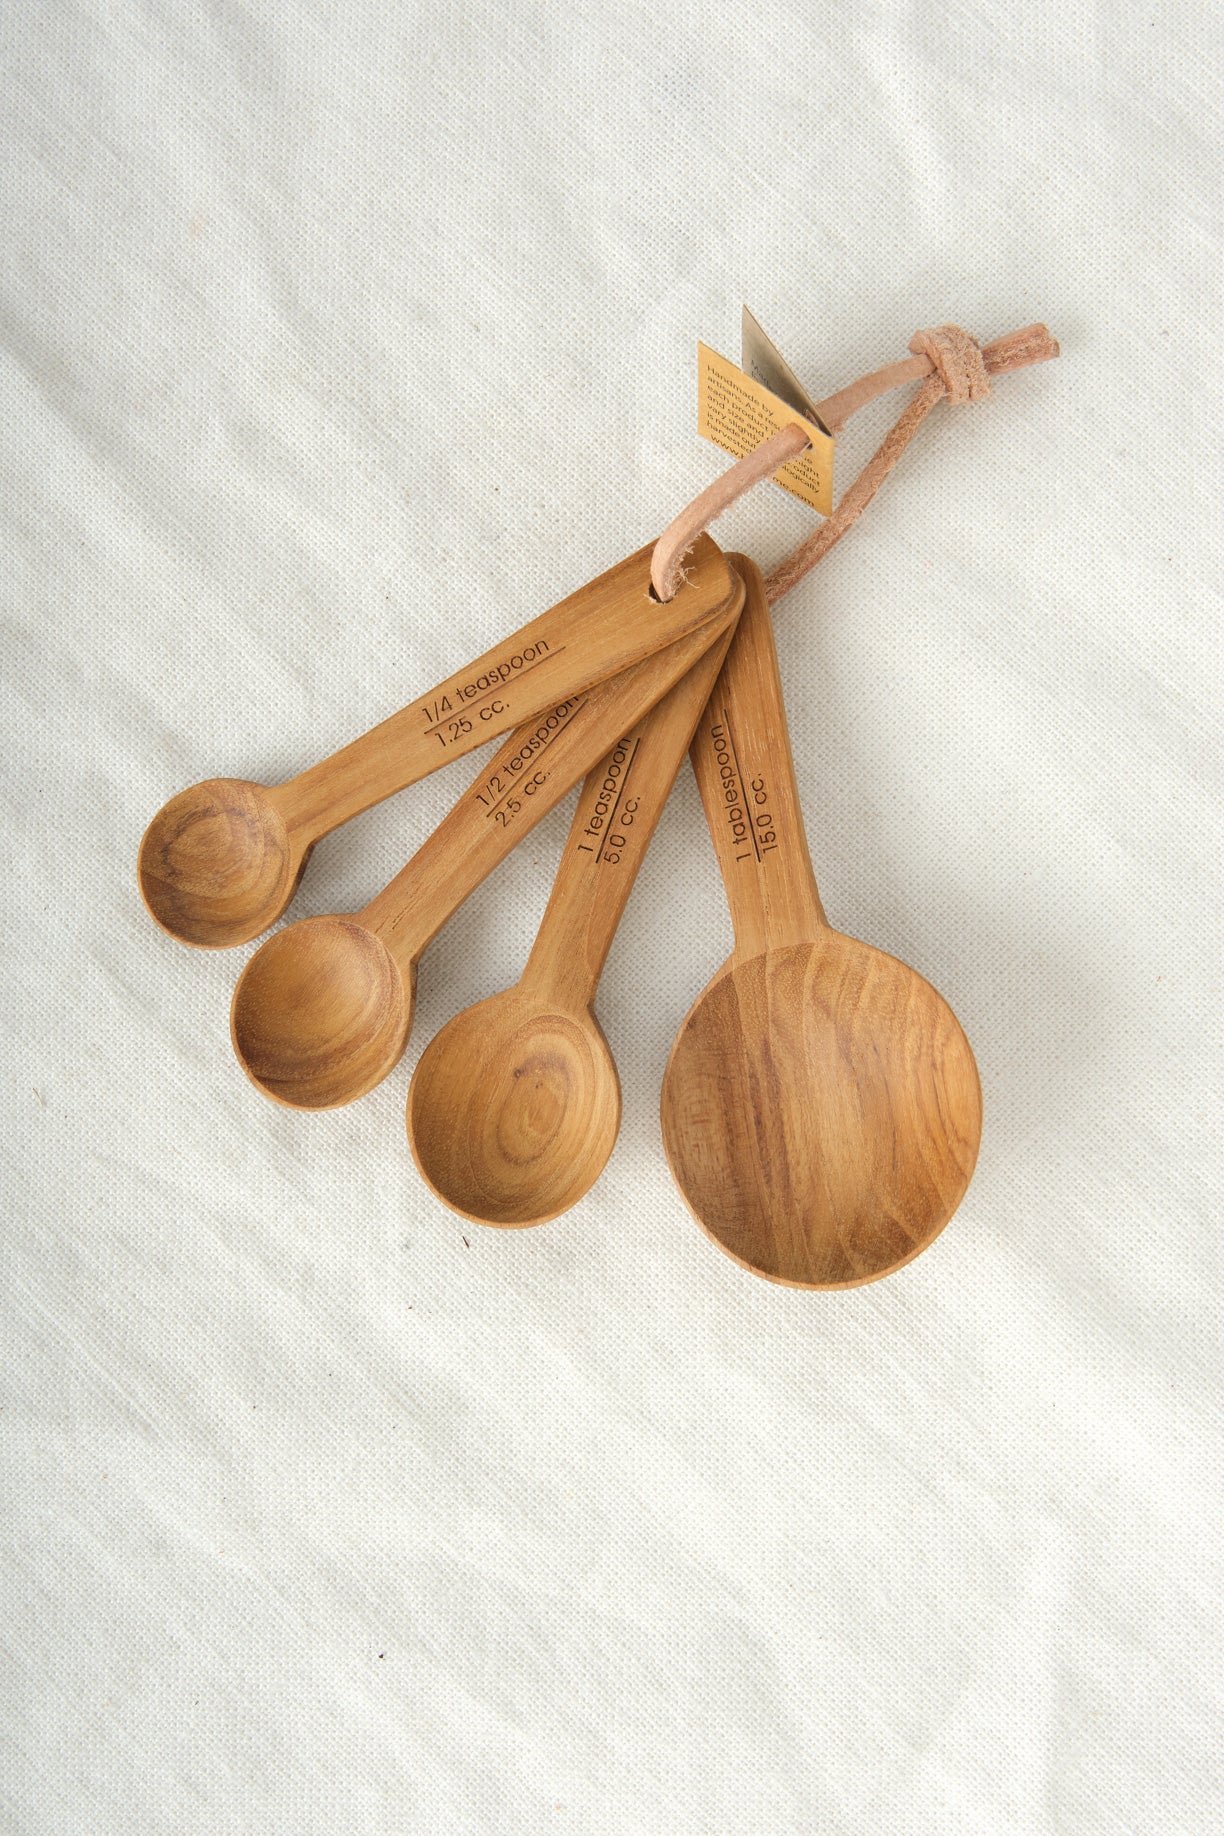 Teak Round Measuring Spoons // Artisanal Designer Kitchen Tools //